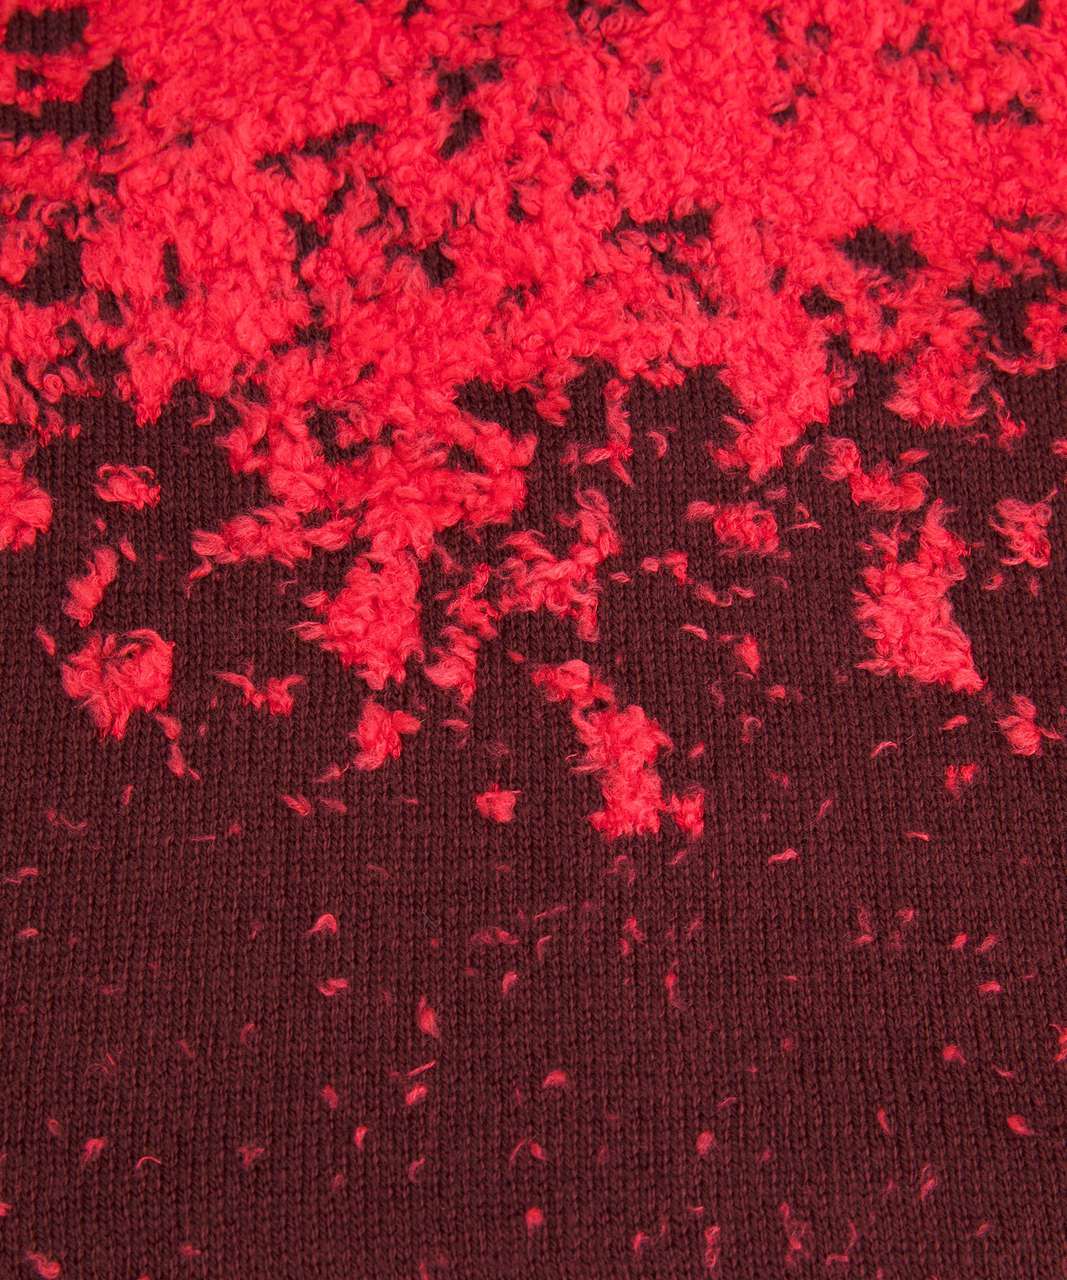 Lululemon Ombre Knit Textured Turtleneck - Red Merlot / Carnation Red